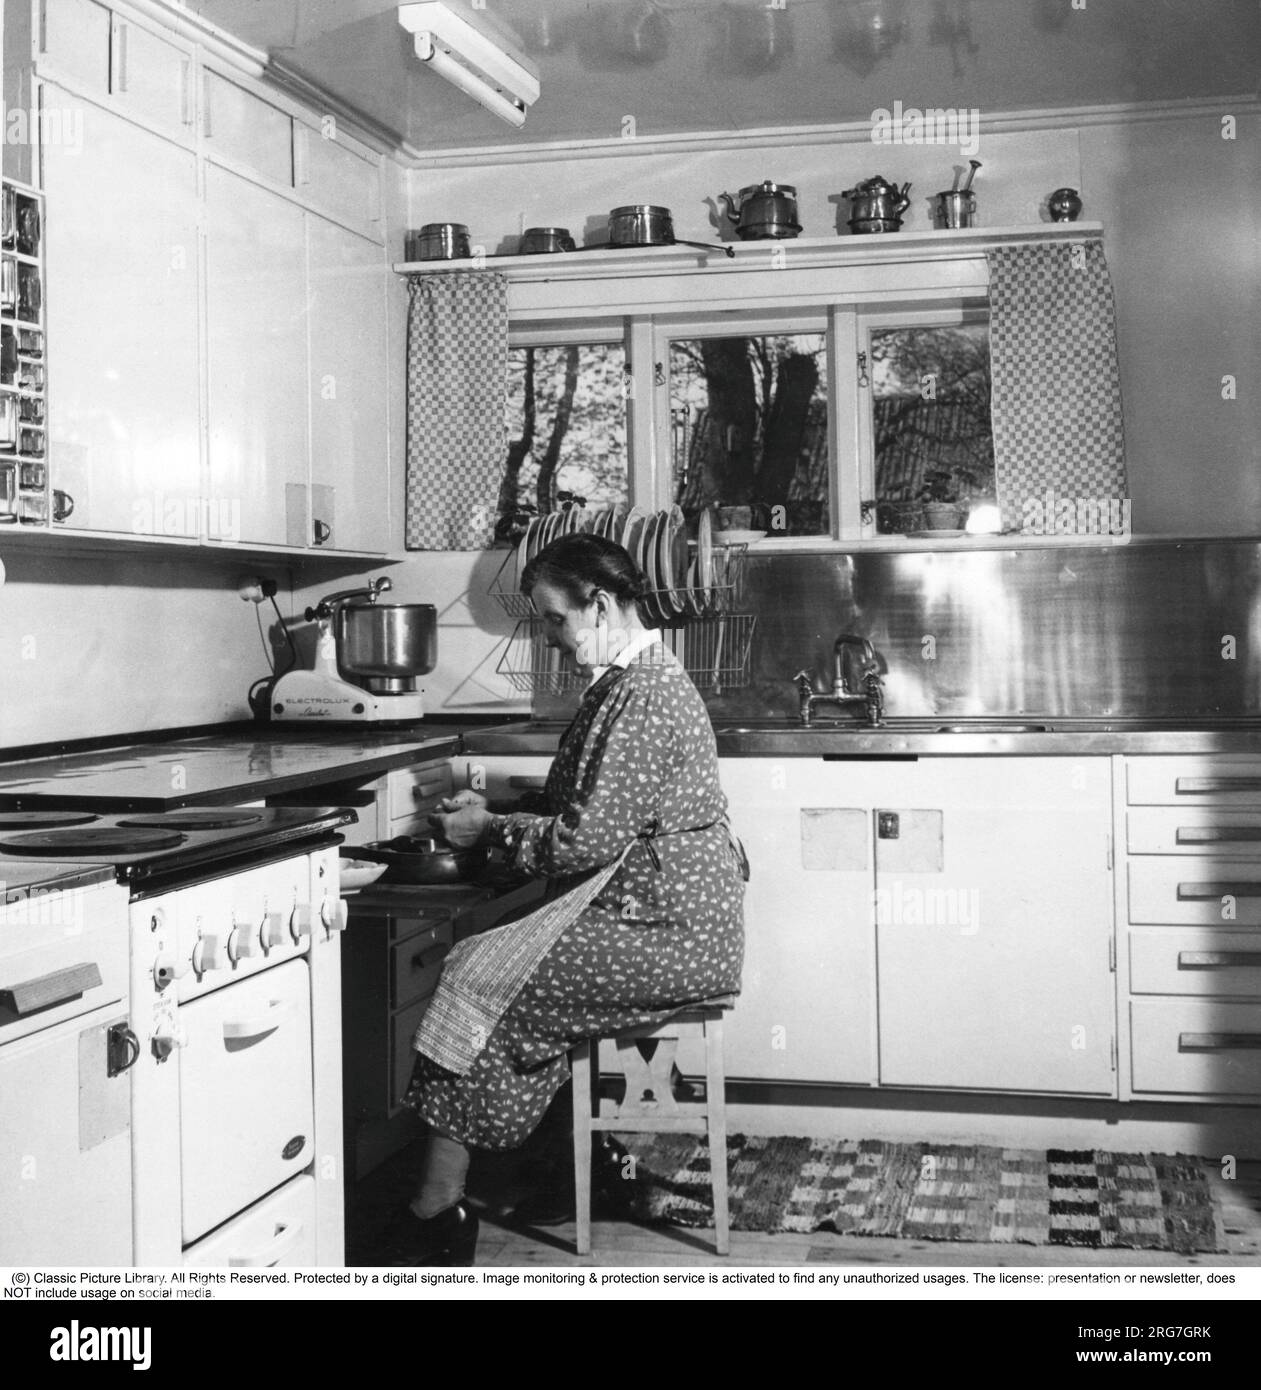 Negli anni '1940 Una donna anziana in una tipica cucina degli anni '1940 con i dettagli dell'interno e gli oggetti che sono molto rappresentativi del decennio. Un assistente di casa, una macchina da cucina, è un apparecchio elettrico la cui funzione di base è di mescolare e lavorare l'impasto ed è visto in piedi sul banco. In realtà, l'assistente domestico è una parola di marca presa dal modello Electrolux chiamato Assistant. Electrolux ha registrato la parola Assistant come marchio. A differenza, ad esempio, dei robot da cucina e delle frustate elettriche, la lavorazione in un assistente avviene a una velocità significativamente inferiore, il che Foto Stock